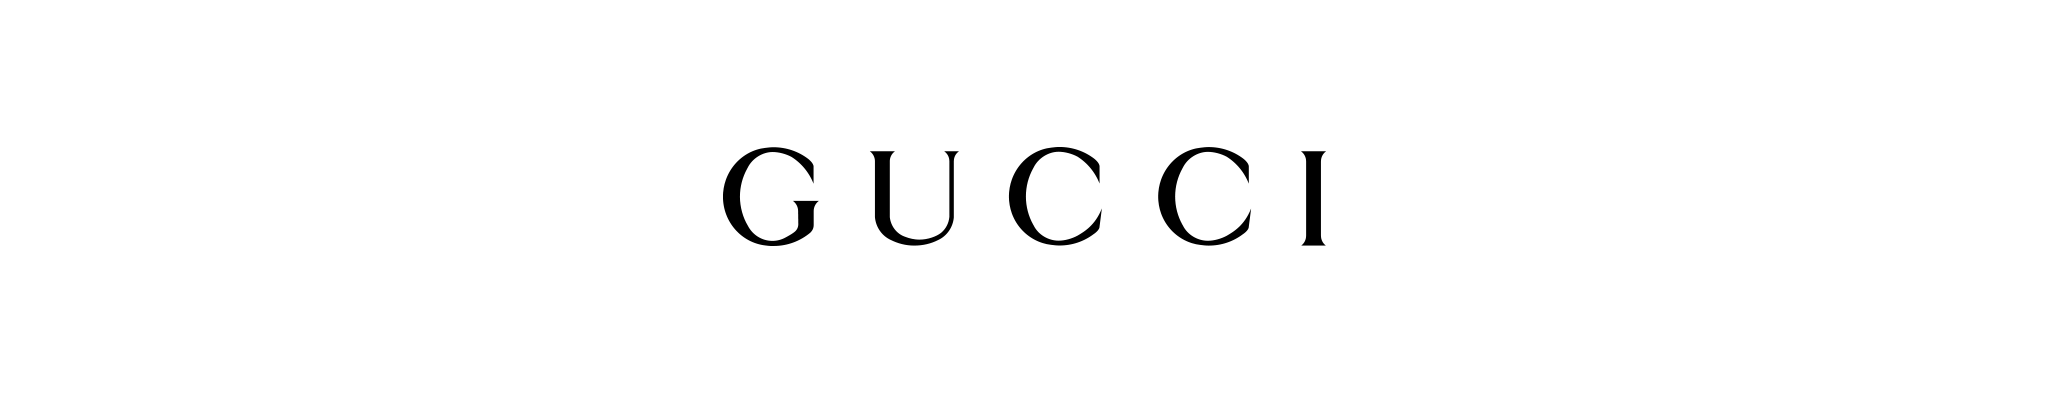 ناقلات غوتشي logo PNG صورة